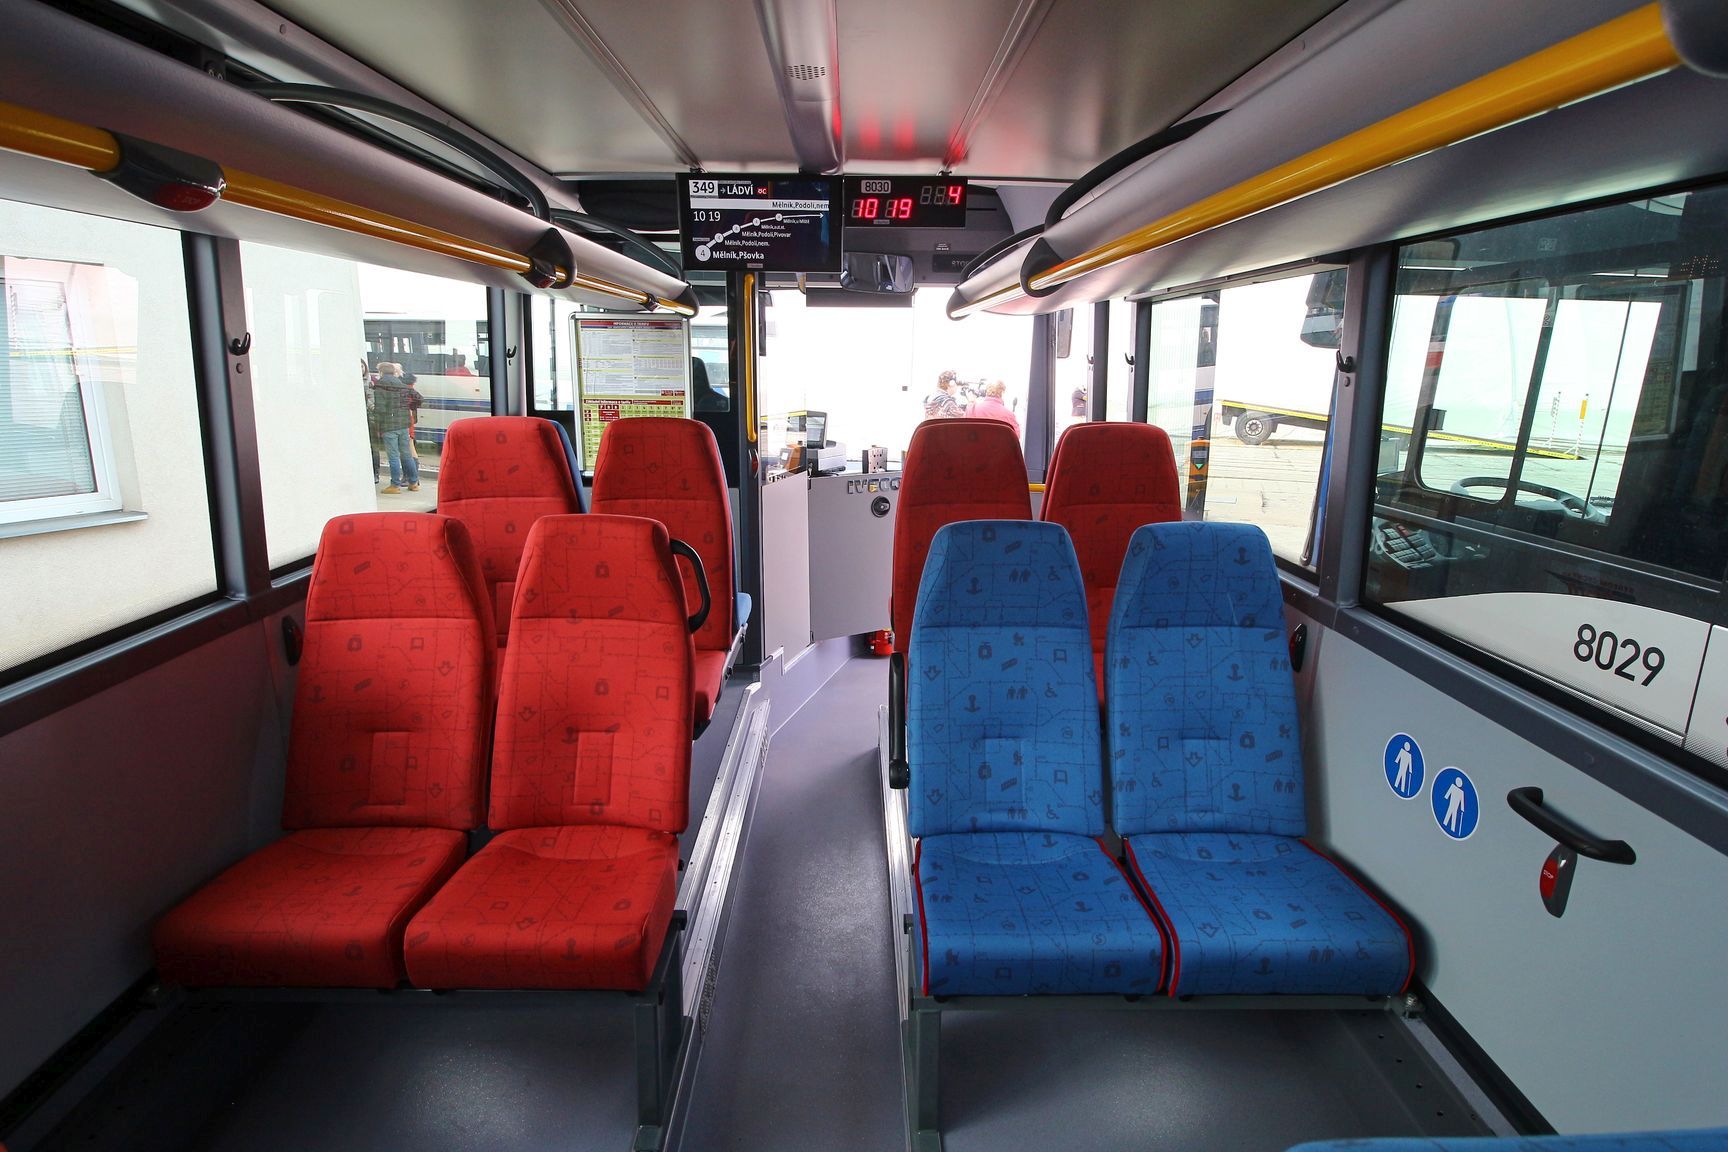 Nové autobusy Iveco pro PID. Pramen: ROPID